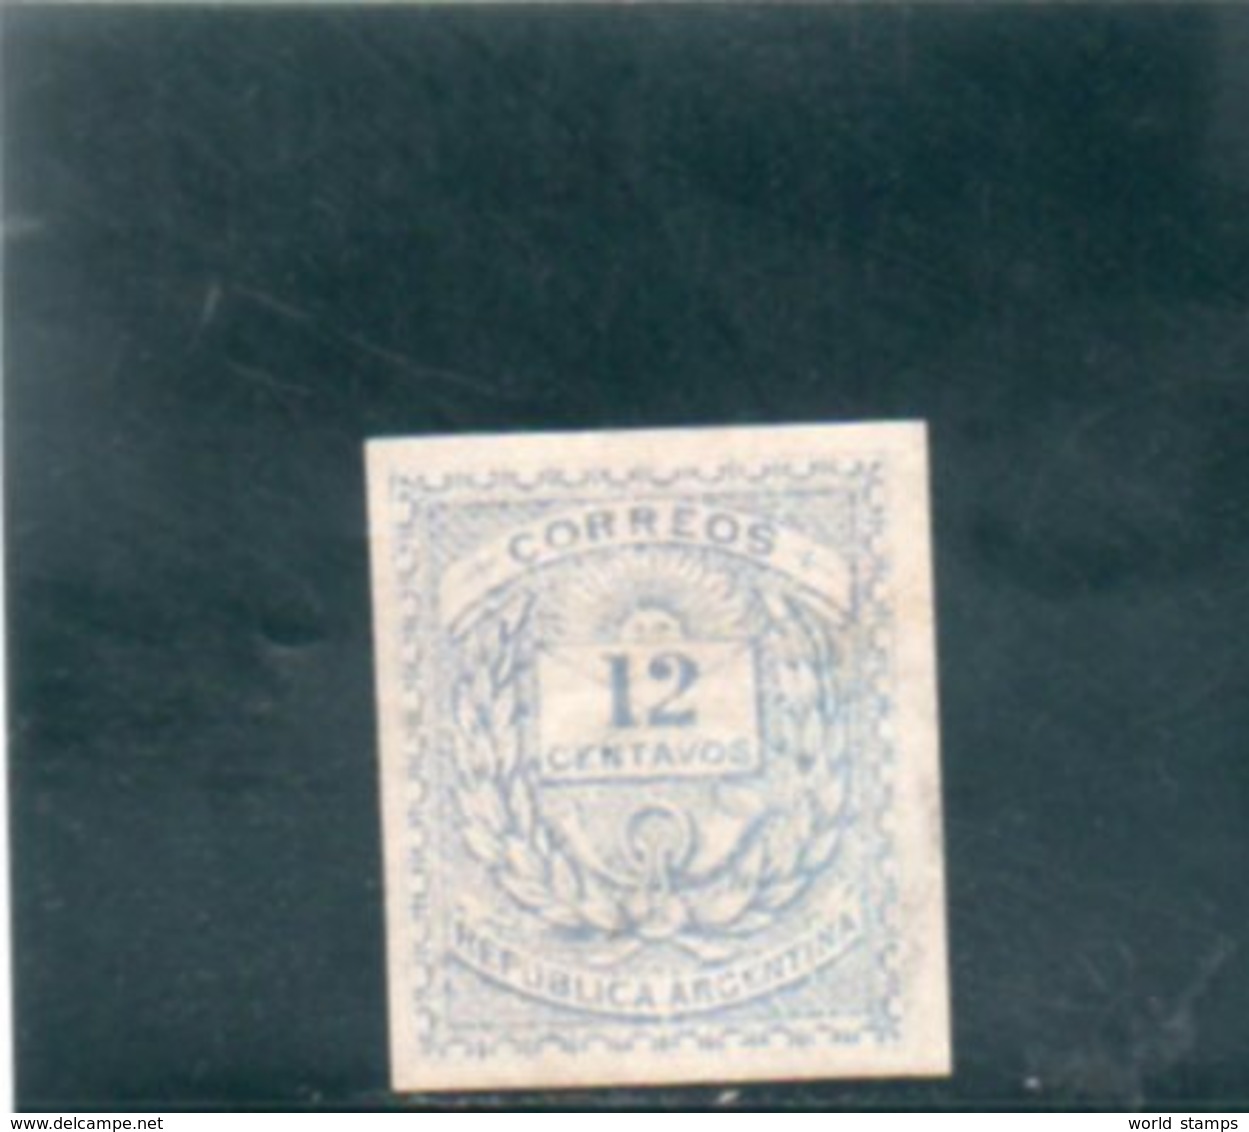 ARGENTINE 1882 * - Unused Stamps